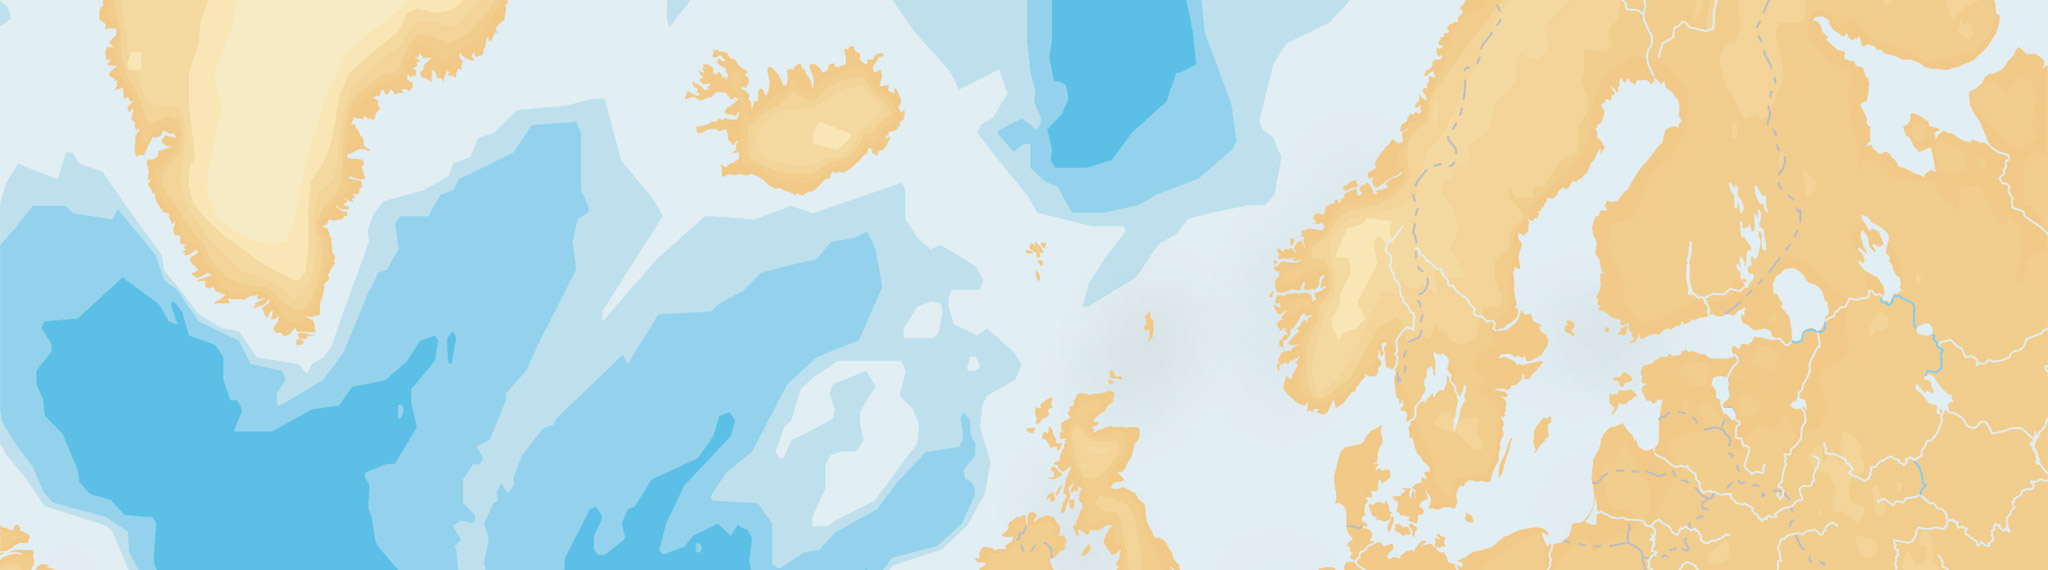 Boating-App: Änderungen bezüglich Preisen und Abdeckungsgebieten für die nordischen Länder